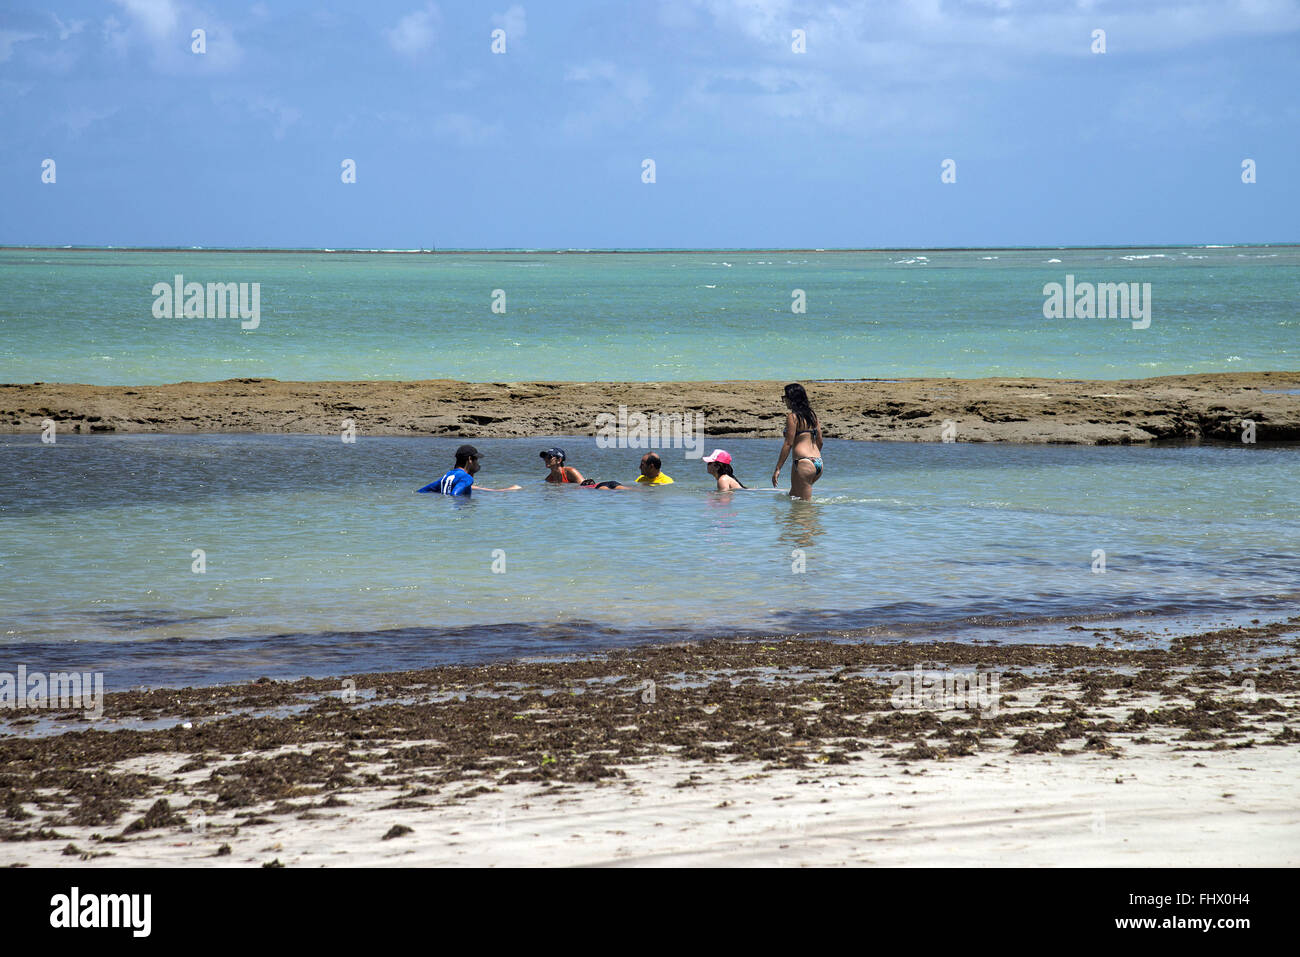 Los turistas en piscinas naturales en marea baja en la playa Boqueirão Foto de stock